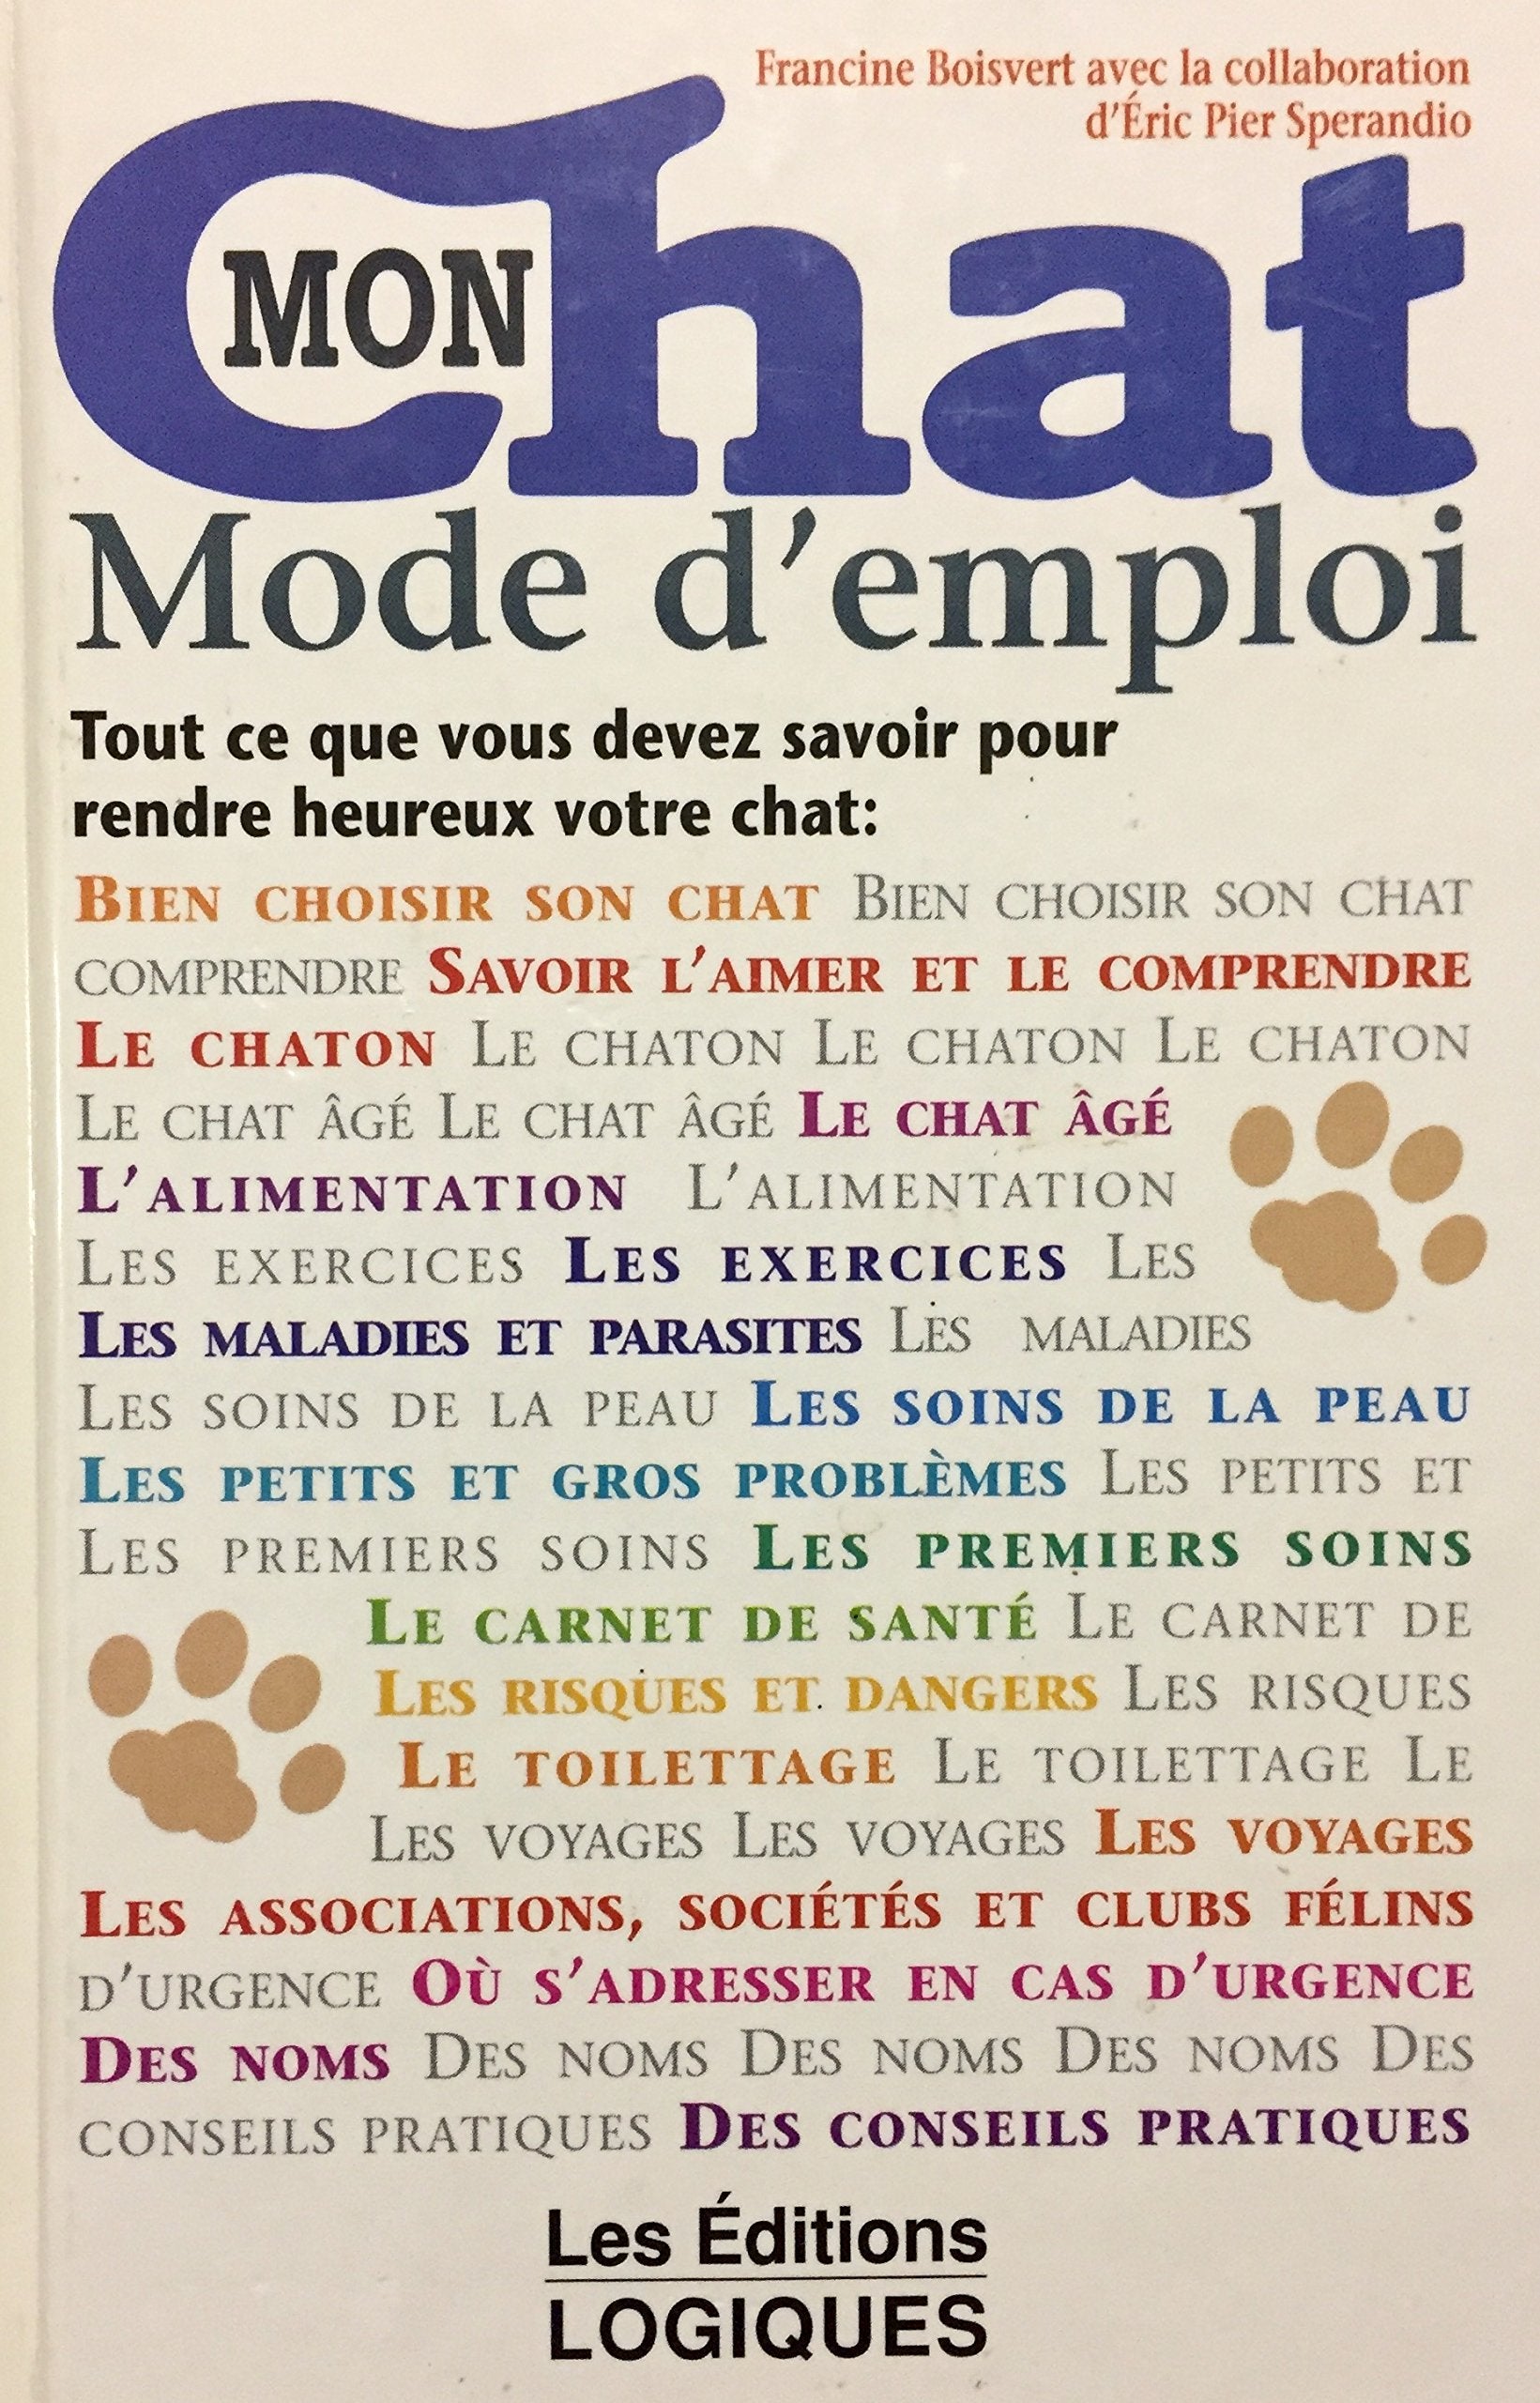 Livre ISBN 2893811124 Mon chat : Mode d'emploi (Francine Boisvert)